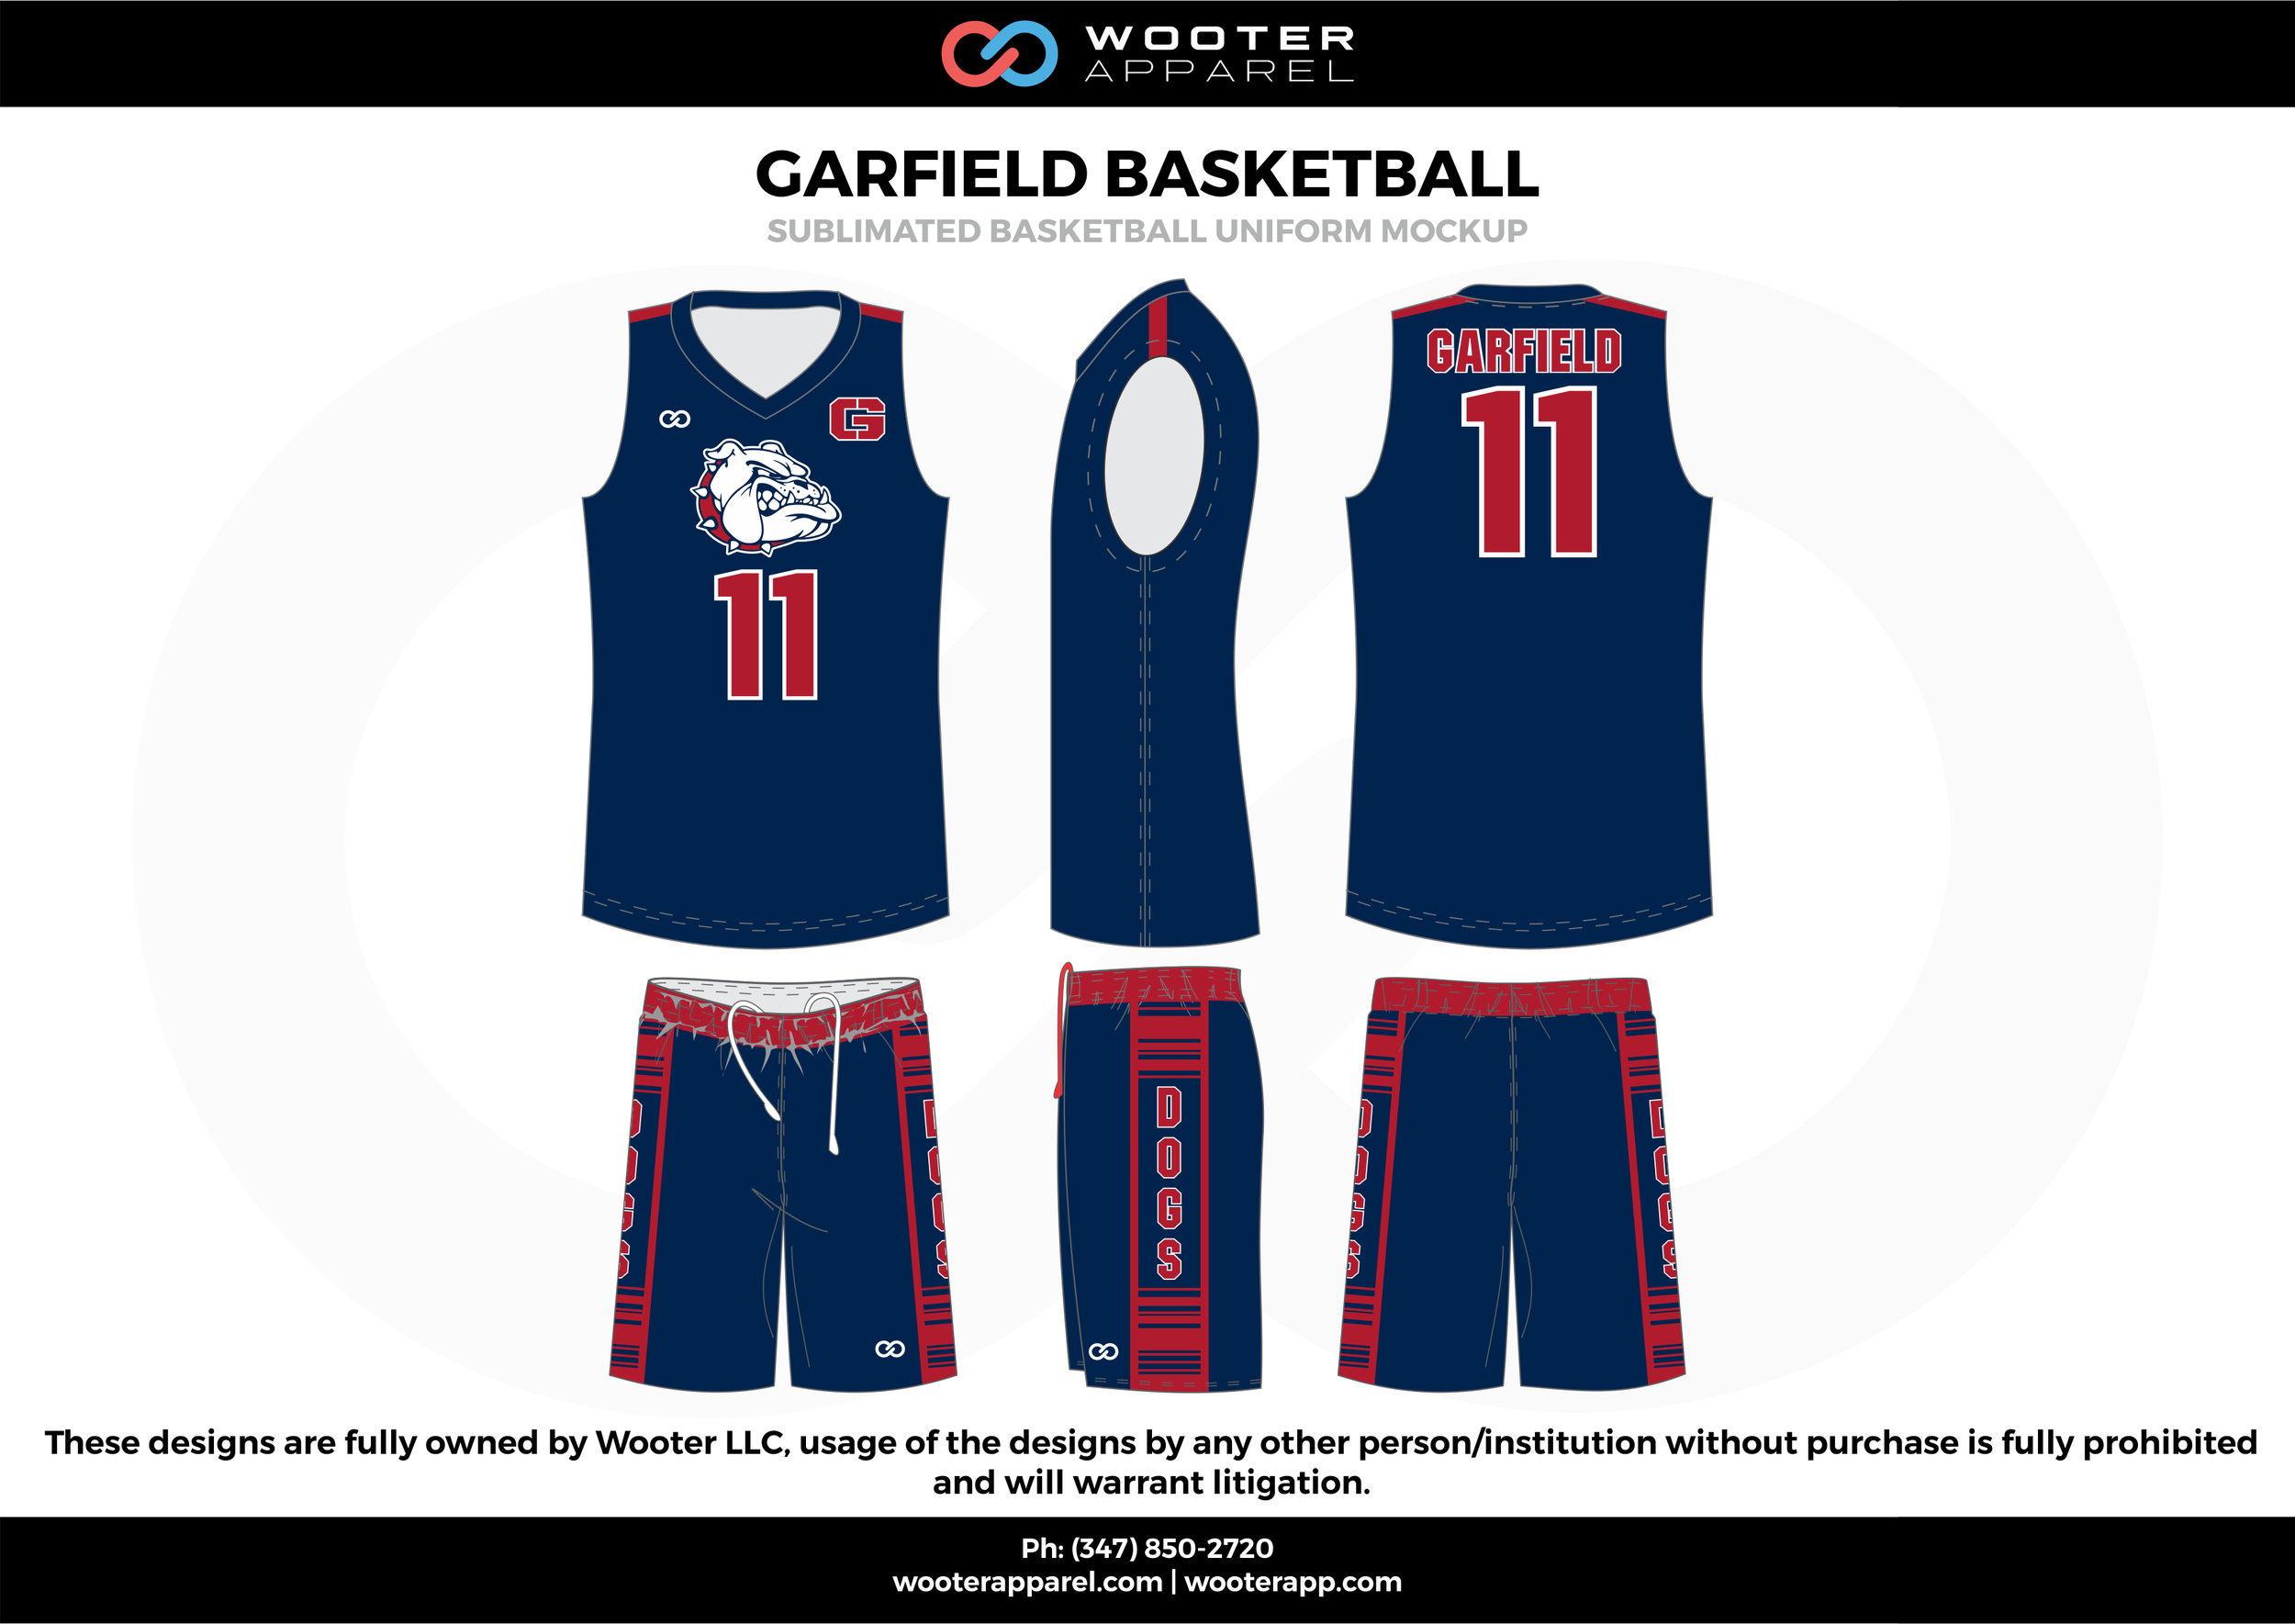 basketball jersey design navy blue